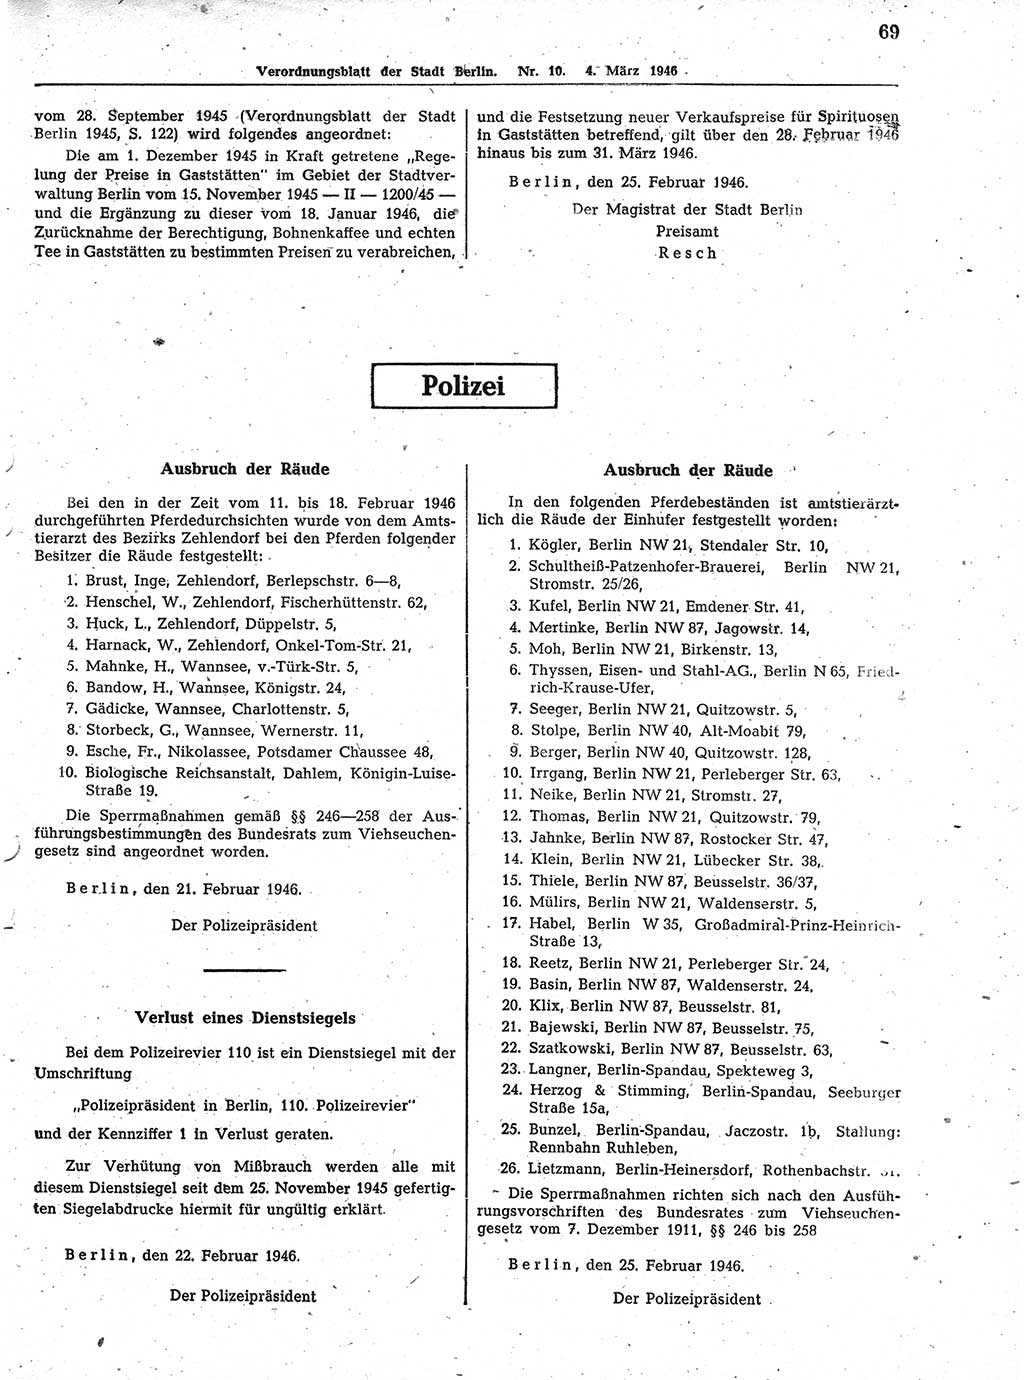 Verordnungsblatt (VOBl.) der Stadt Berlin, für Groß-Berlin 1946, Seite 69 (VOBl. Bln. 1946, S. 69)